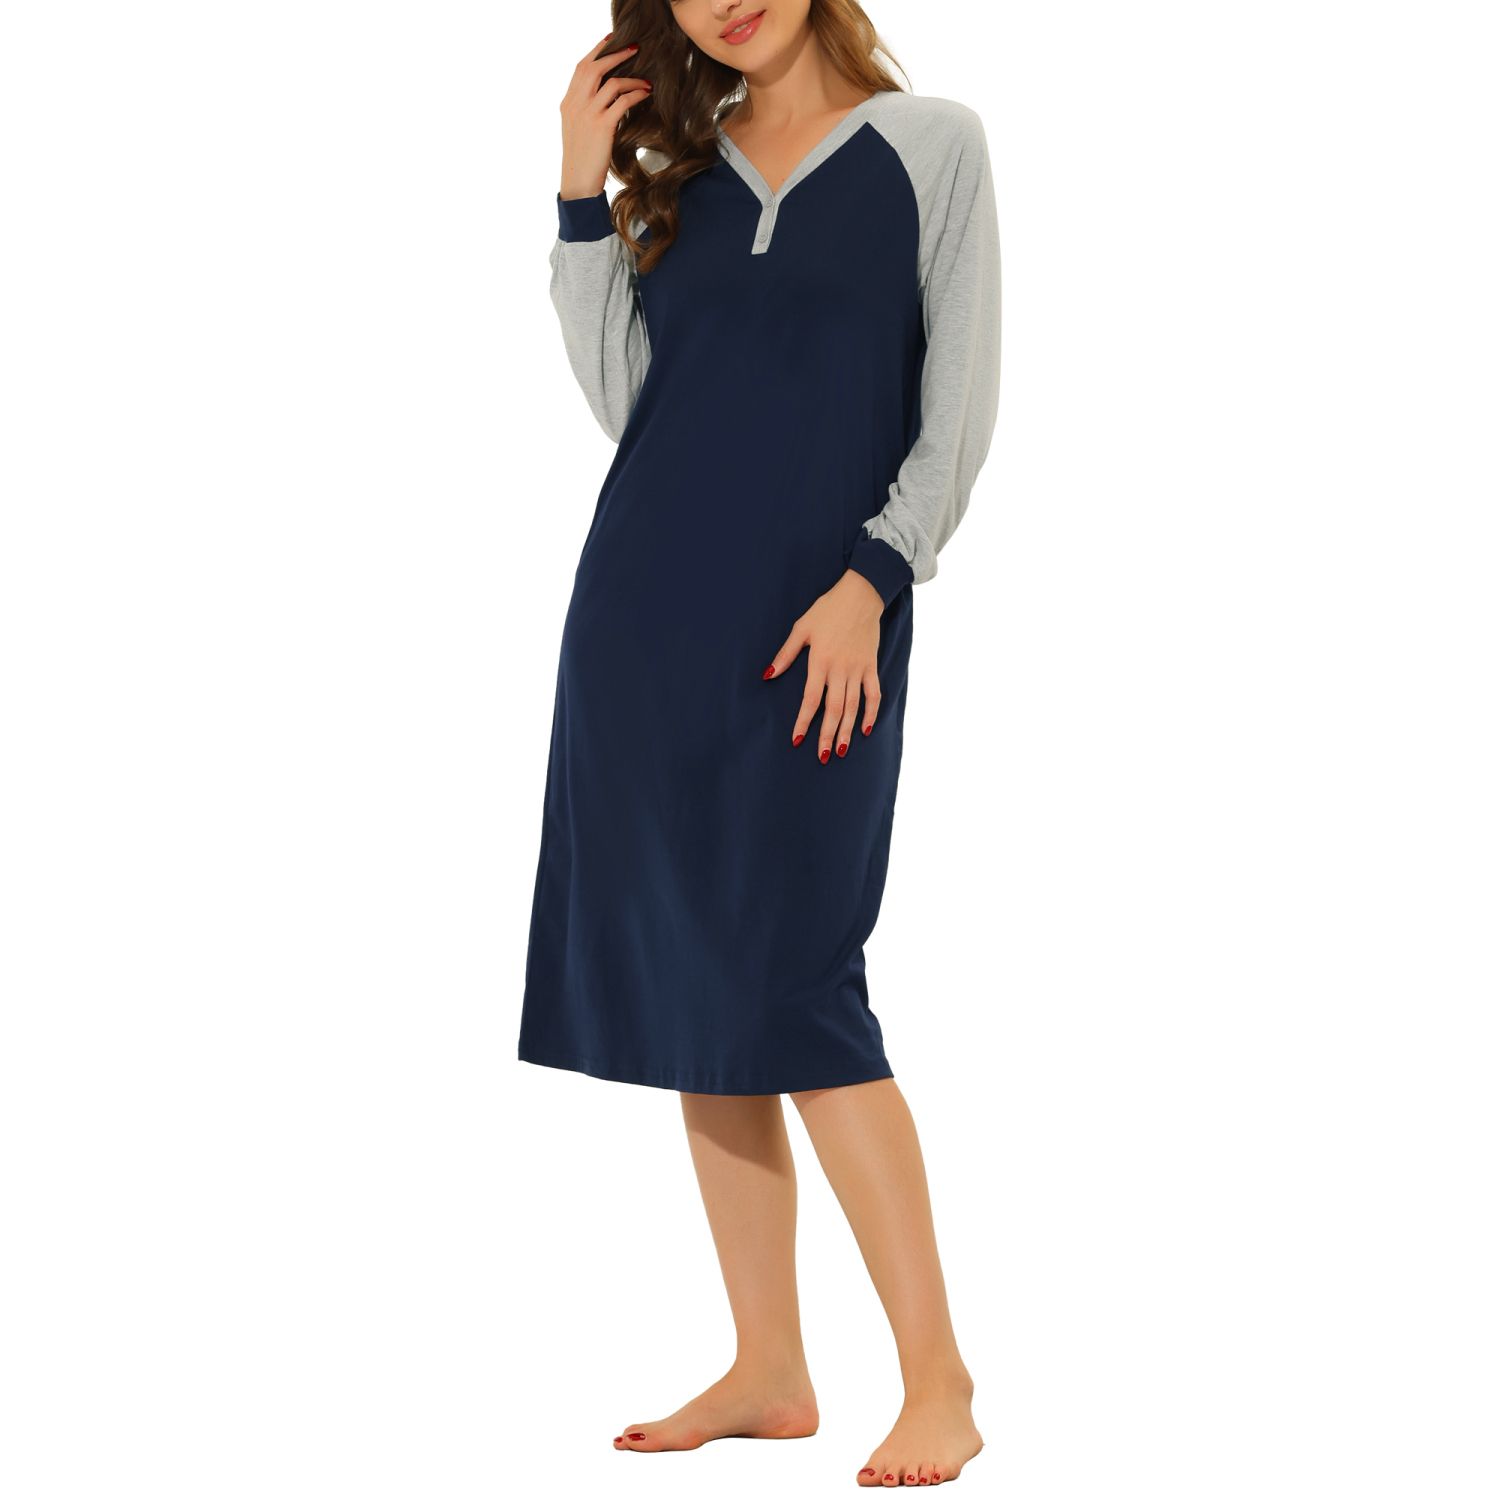 Женская пижама, ночная рубашка, платье на пуговицах, ночная рубашка для отдыха cheibear, синий